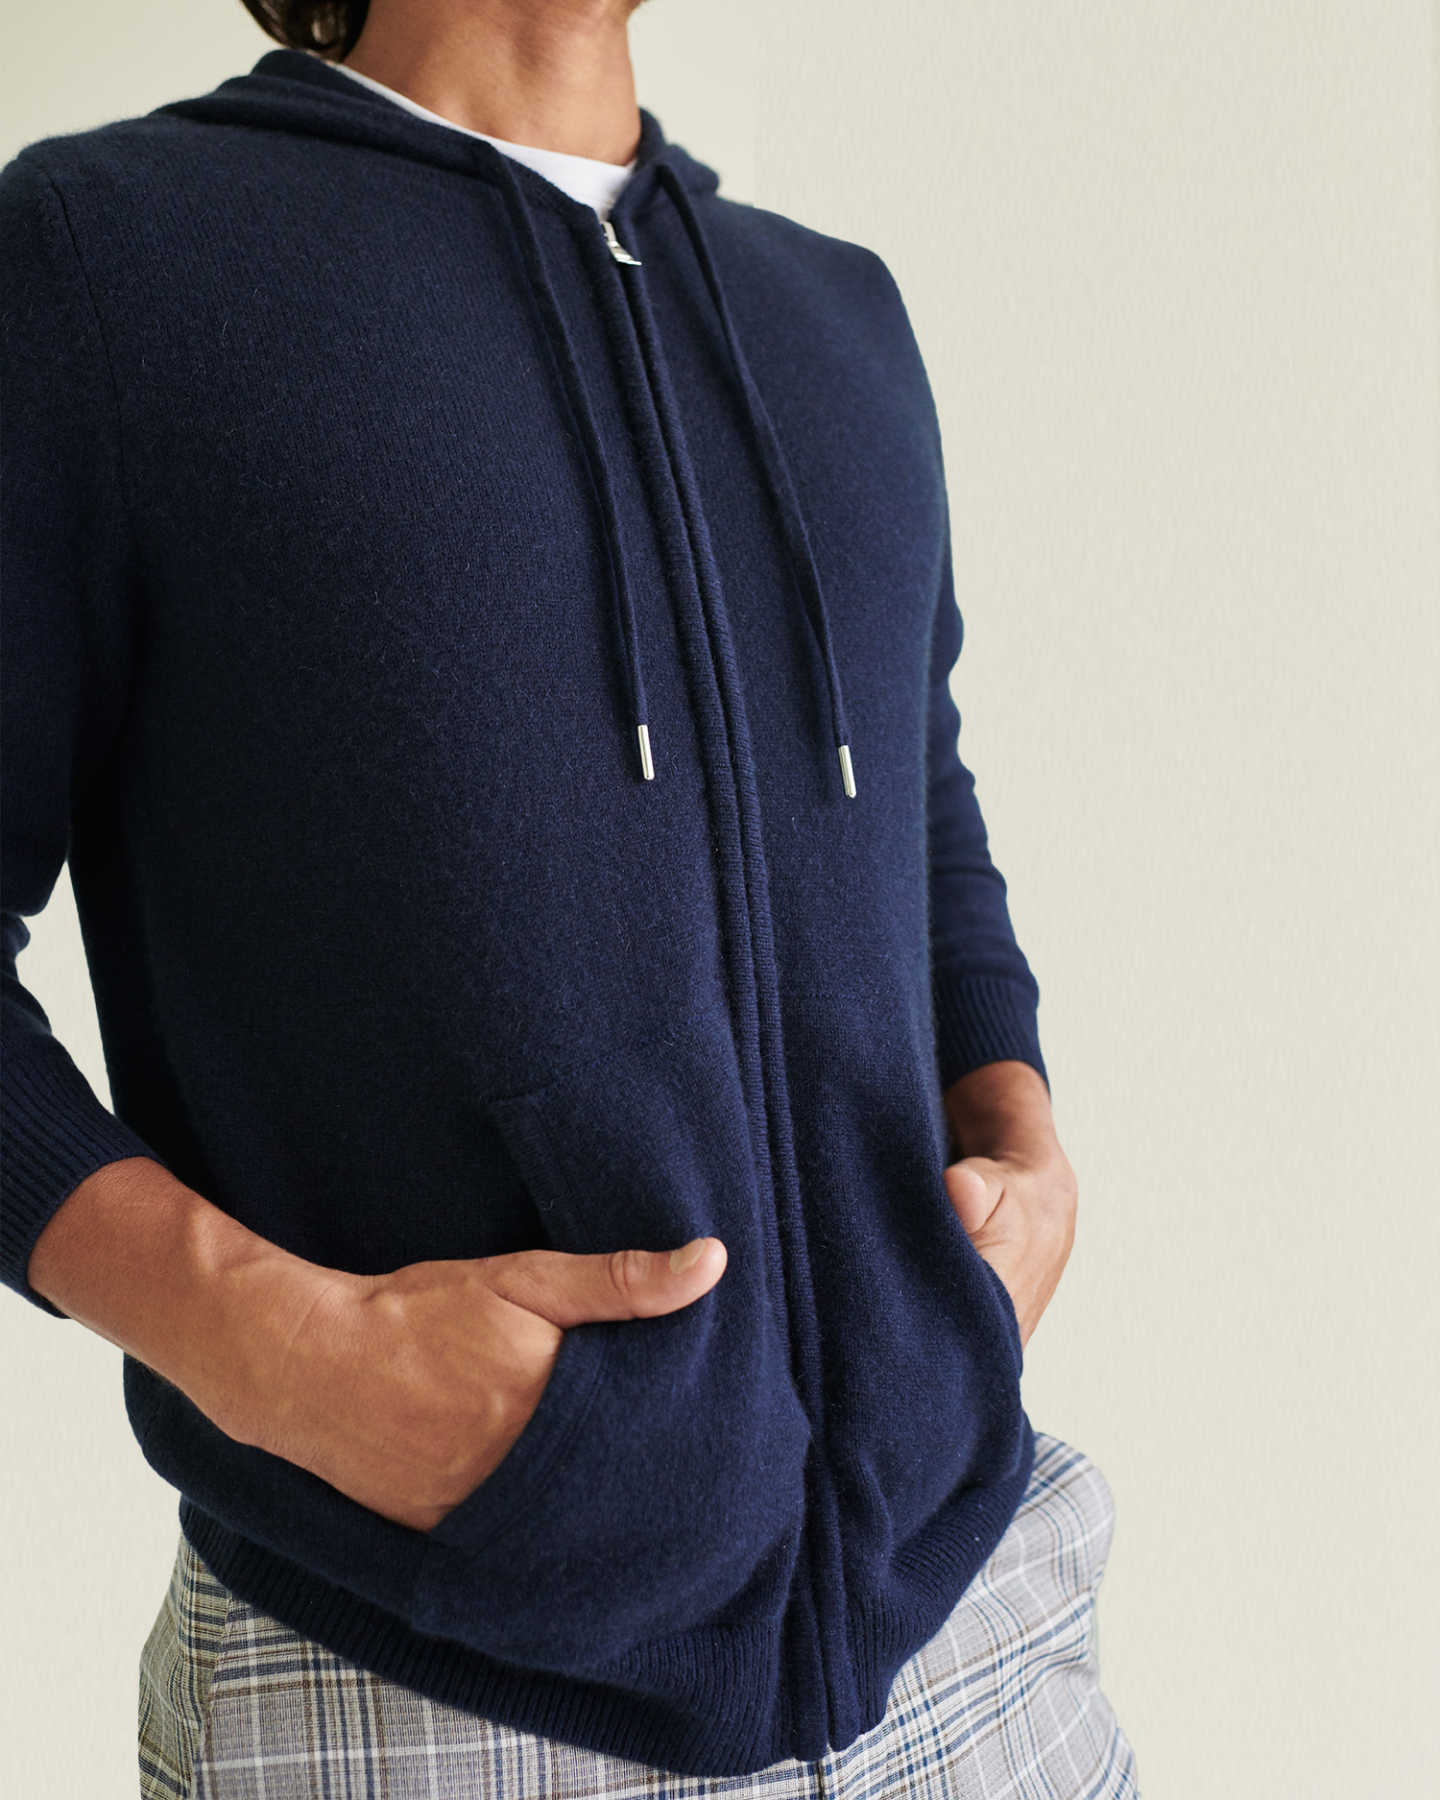 mens navy cashmere zip up hoodie hands in pockets